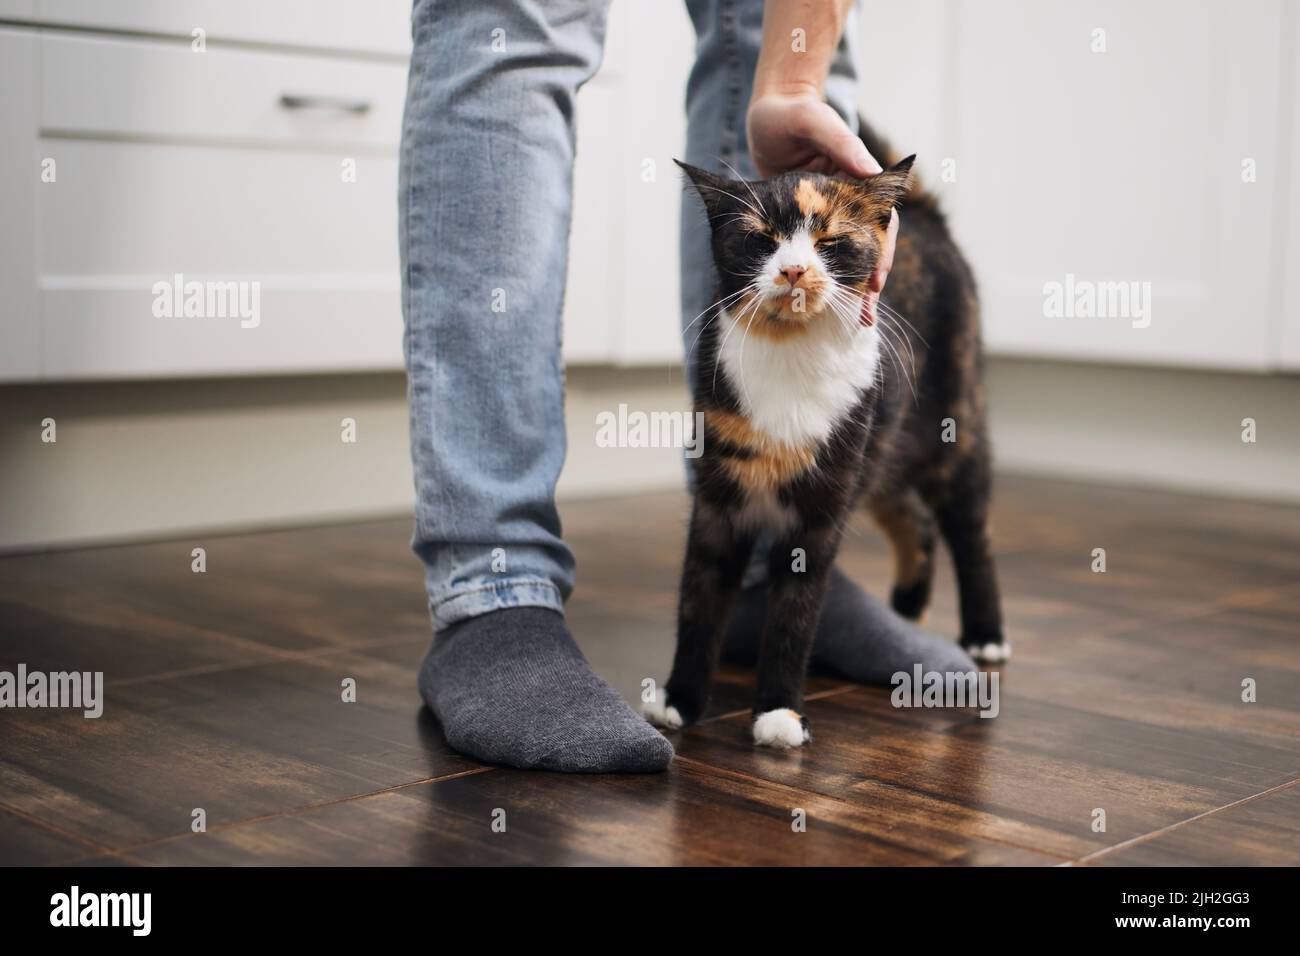 La vie domestique avec les animaux. Un homme qui a caressé son joli chat marbré à la maison Banque D'Images